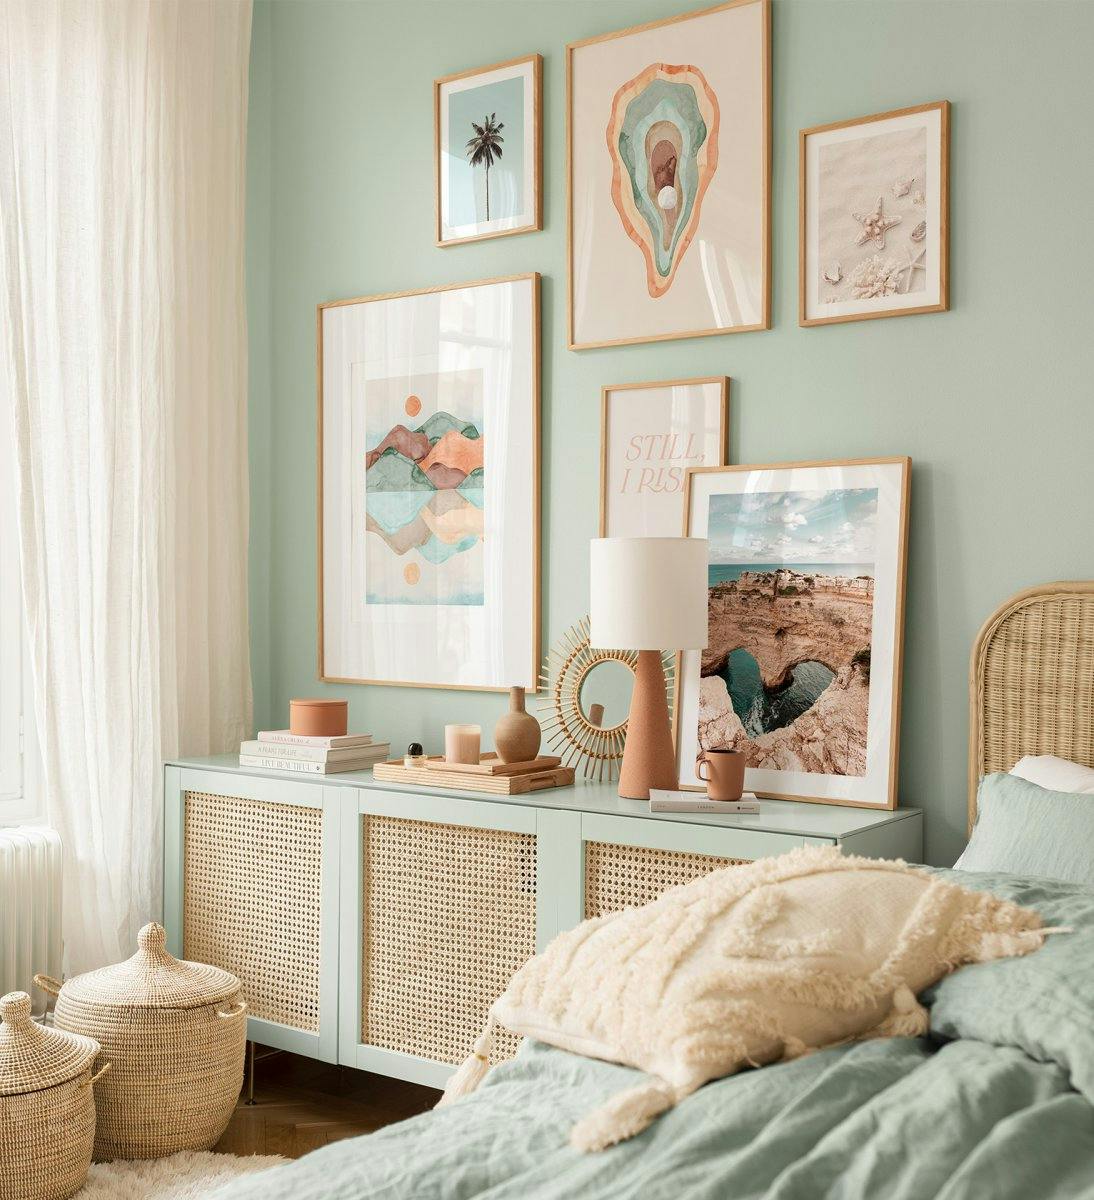 자연의 색이 아름답게 어우러진 거실 또는 침실을 위한 갤러리월